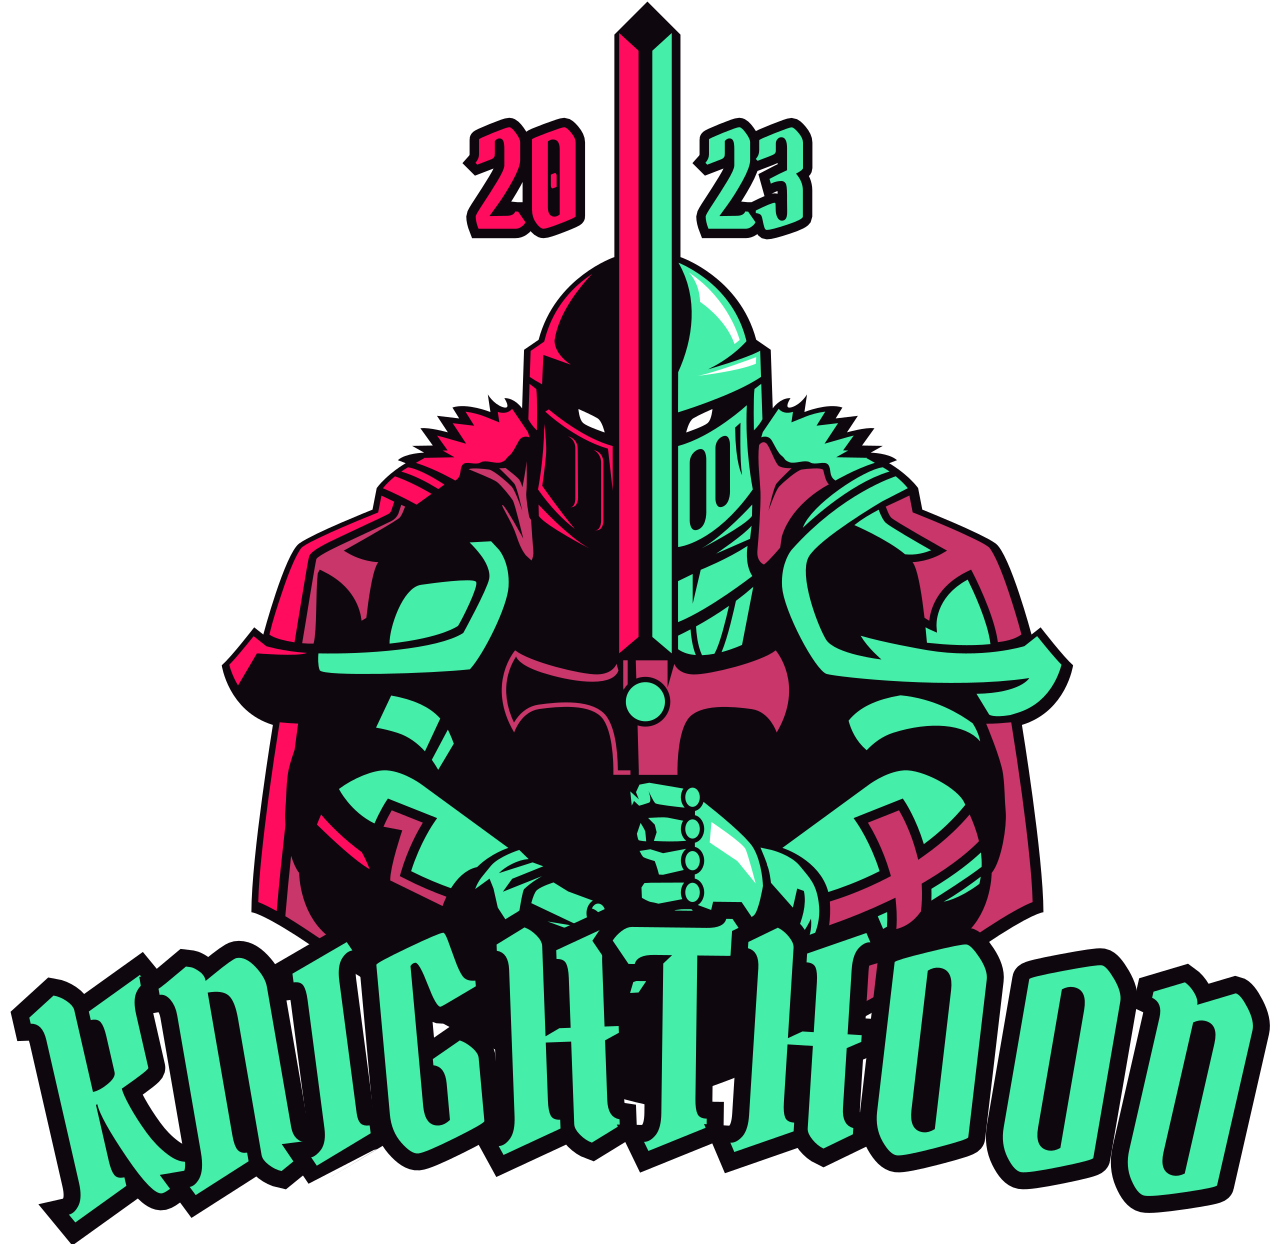 KNIGHTHOOD's web page